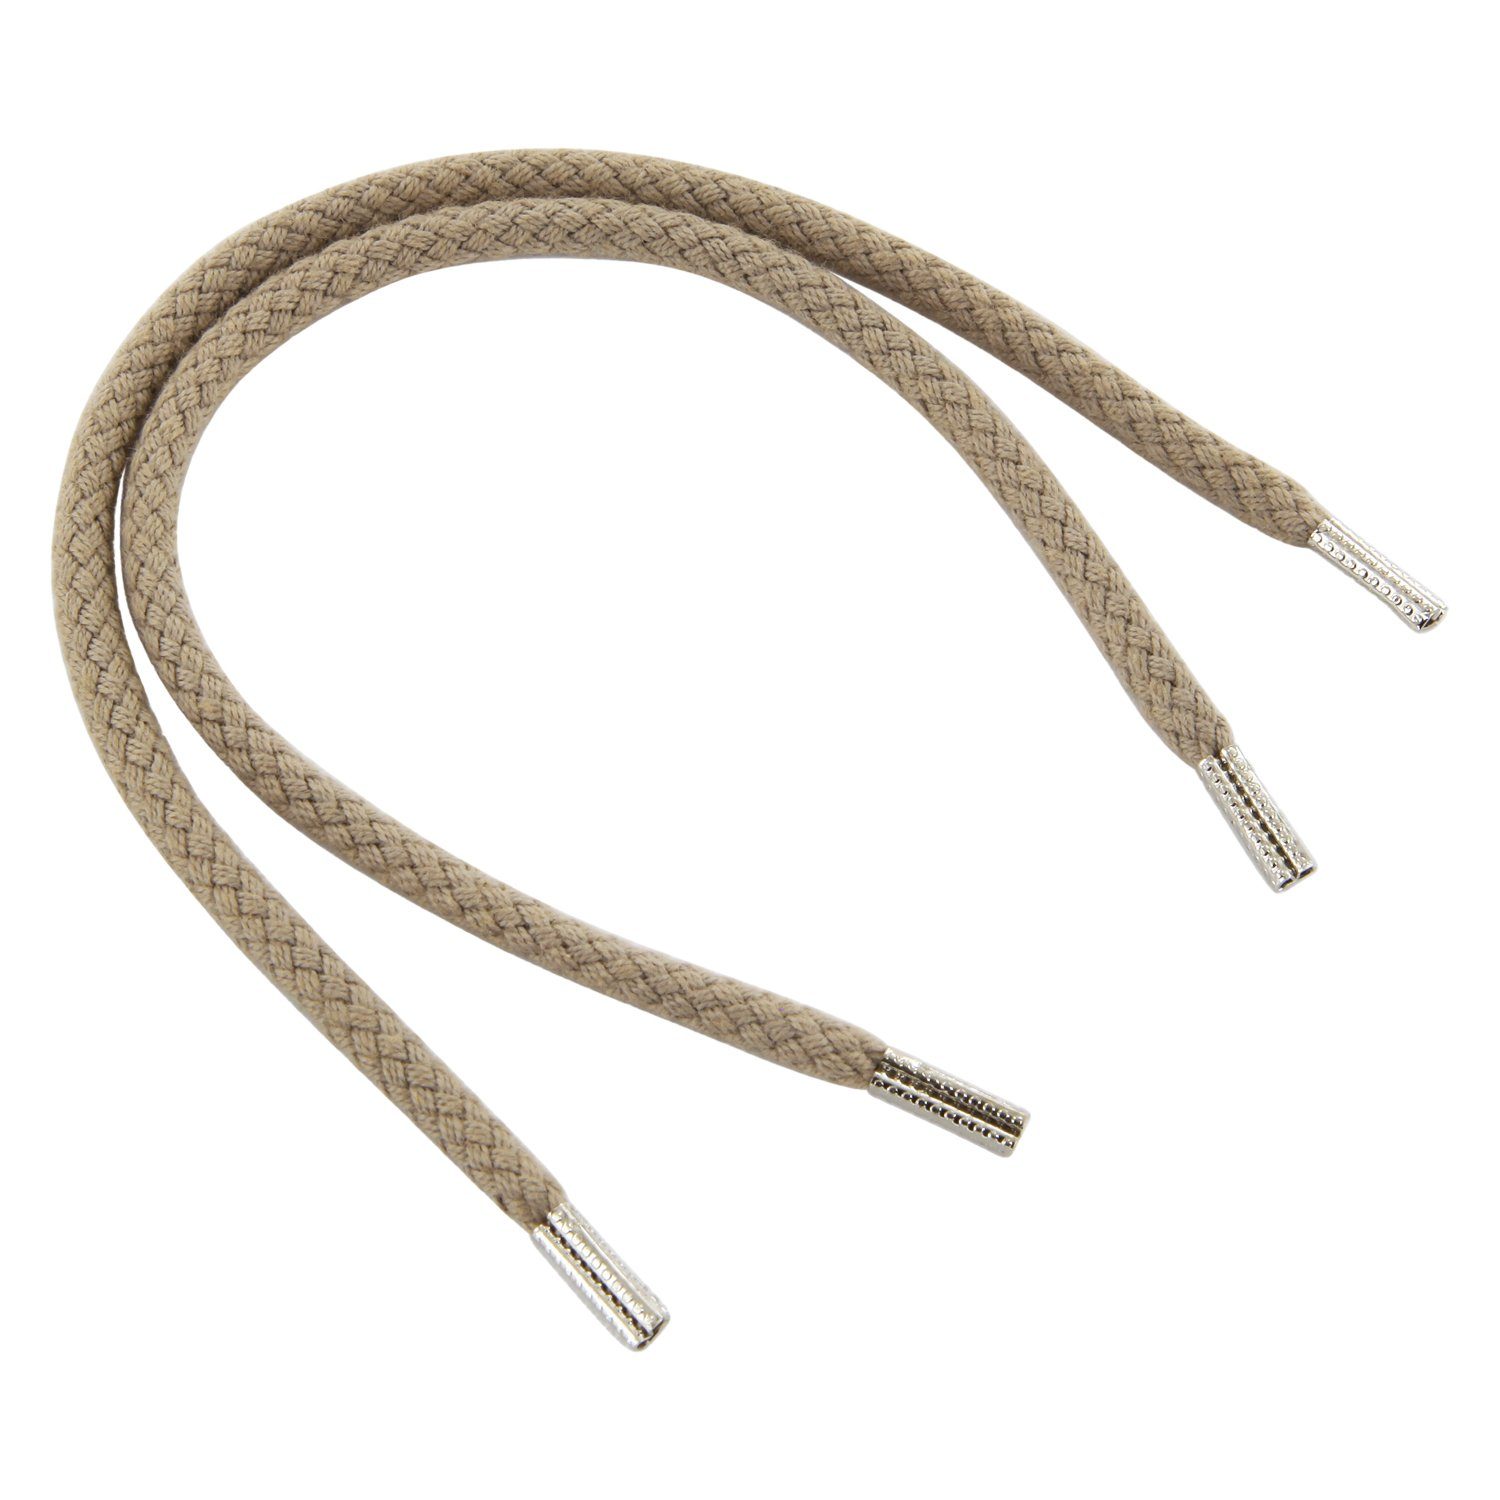 Rema Schnürsenkel Rema Schnürsenkel Elfenbein - rund - ca. 3 mm breit für Sie nach Wunschlänge geschnitten und mit Metallenden versehen